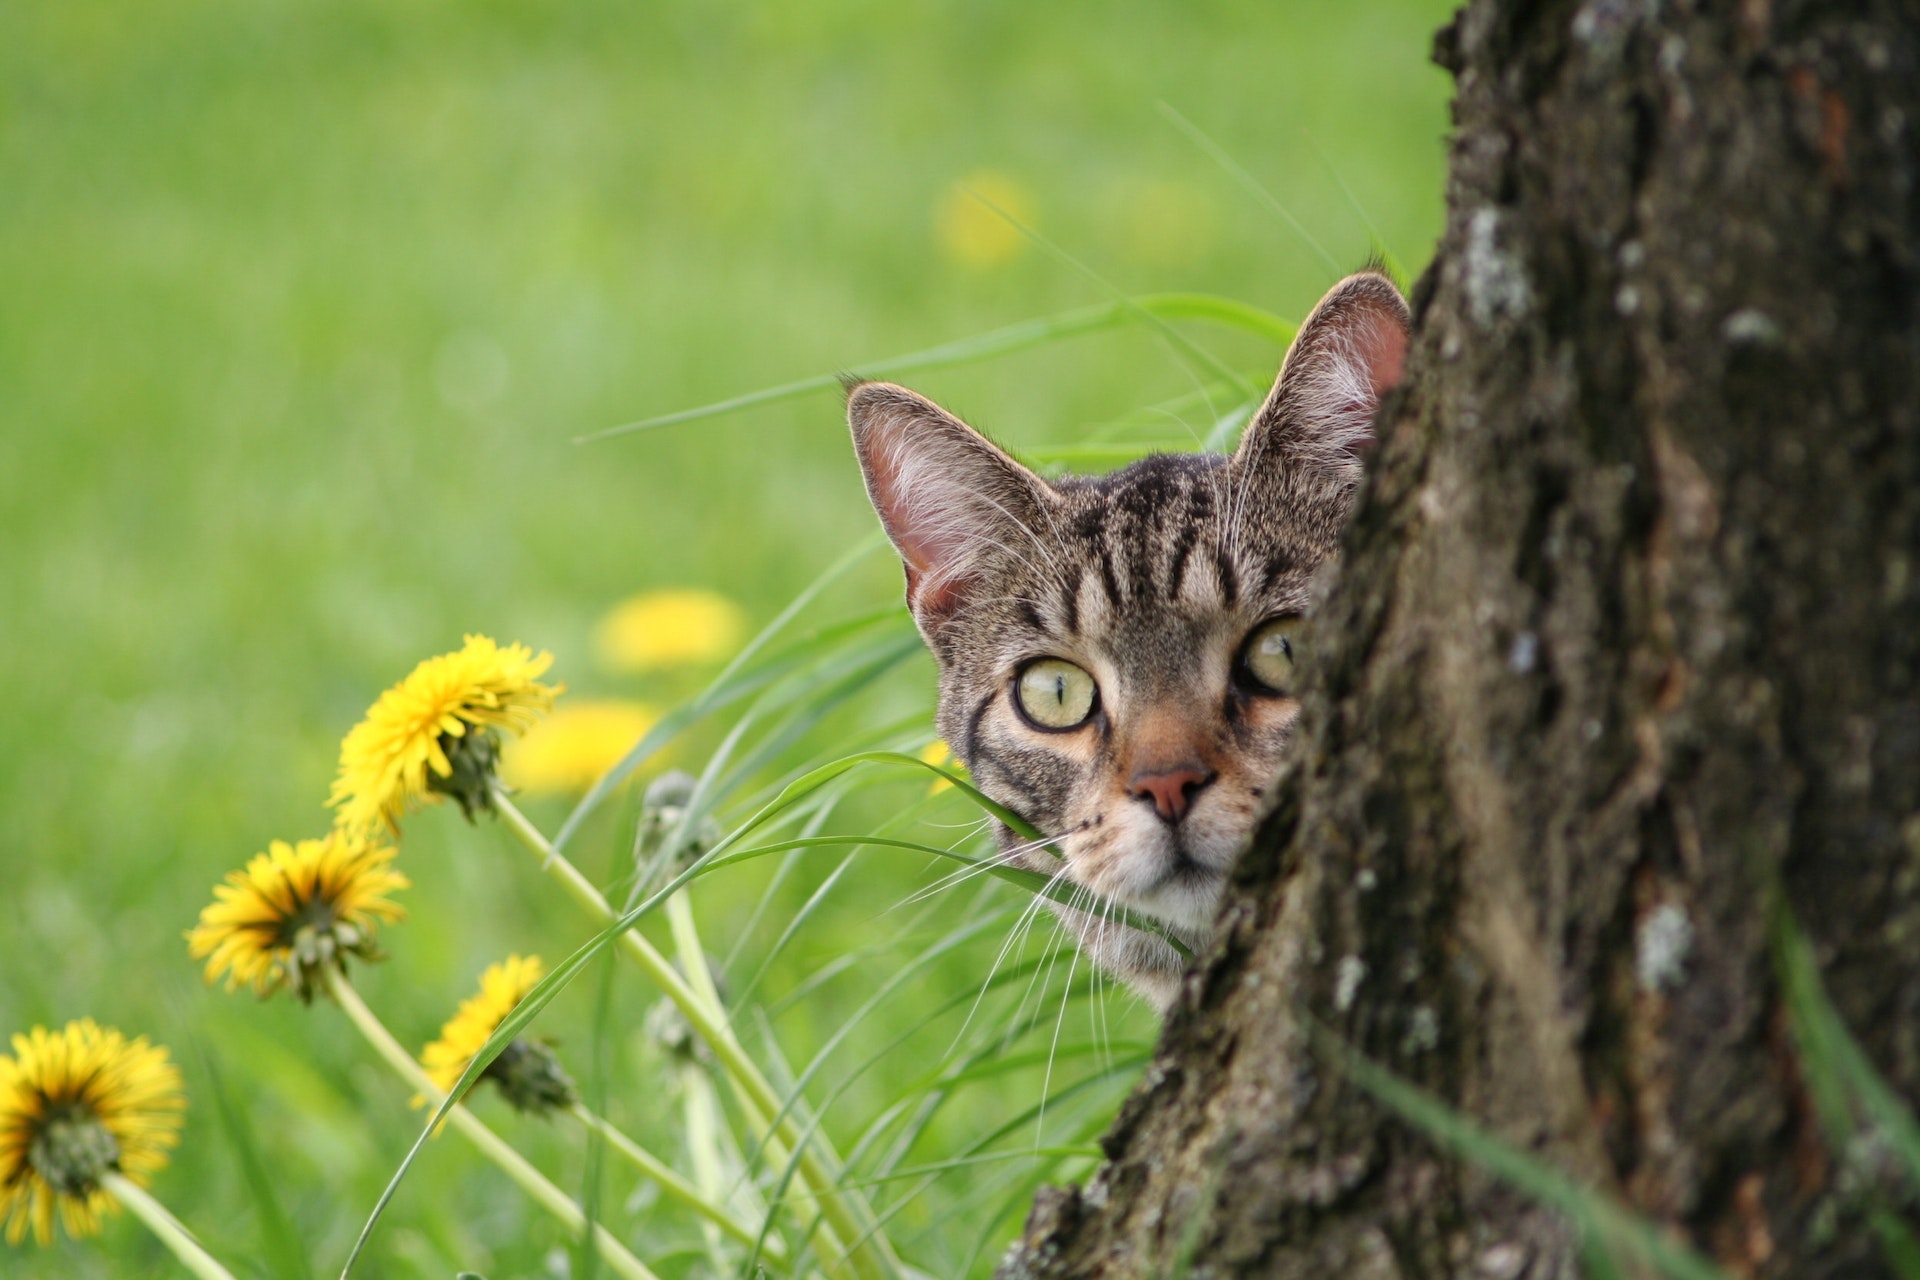 Katze erkundet den Garten und schaut hinter einem Baum hervor